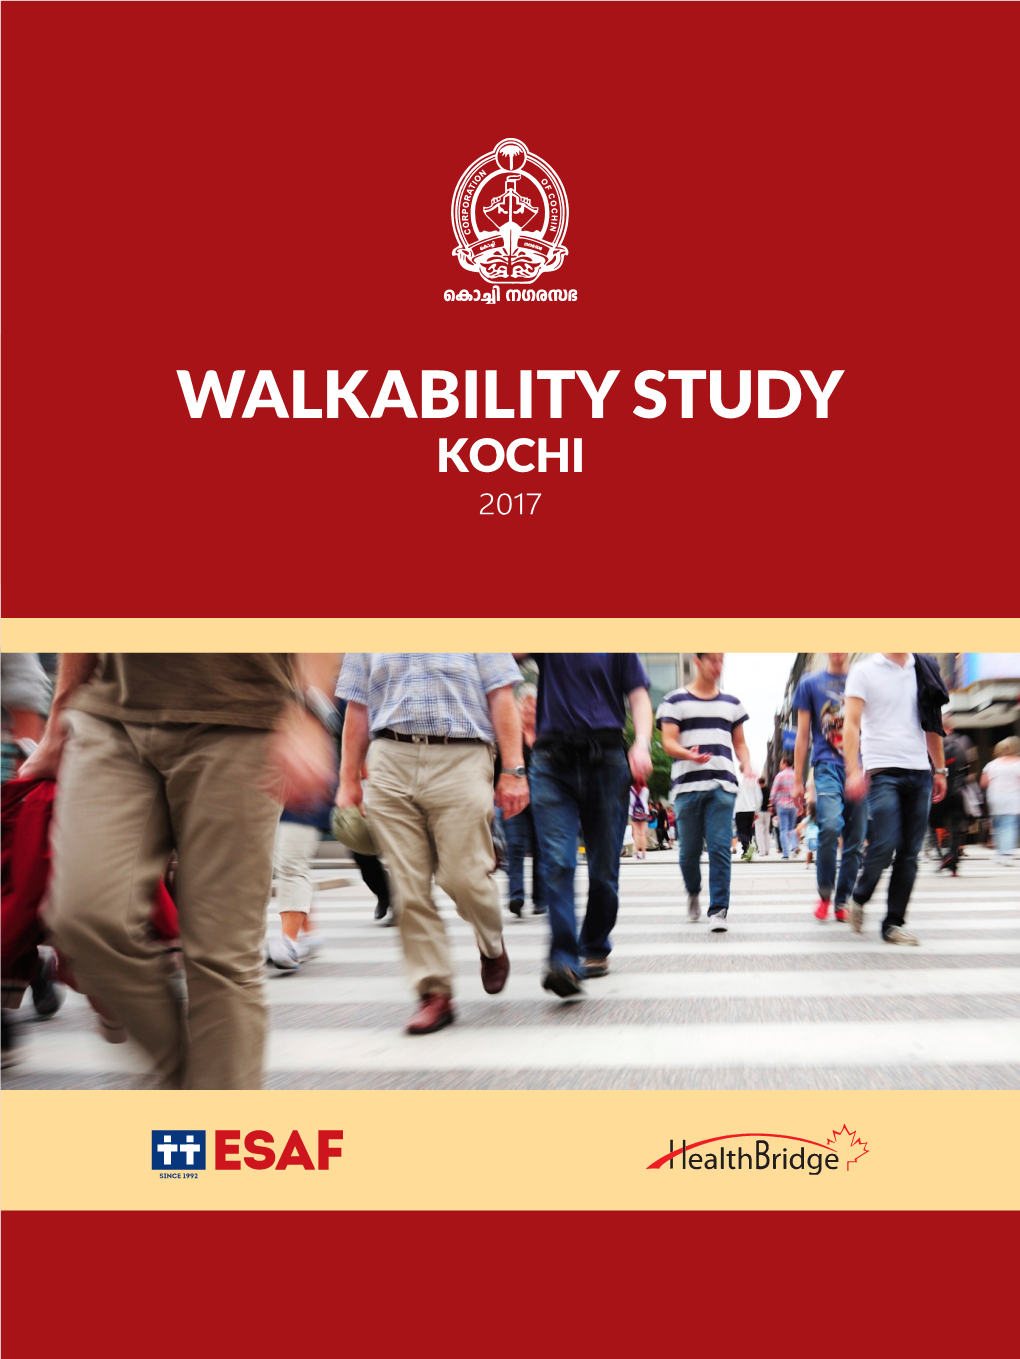 Walkability Study Kochi 2017 Walkability Study Kochi